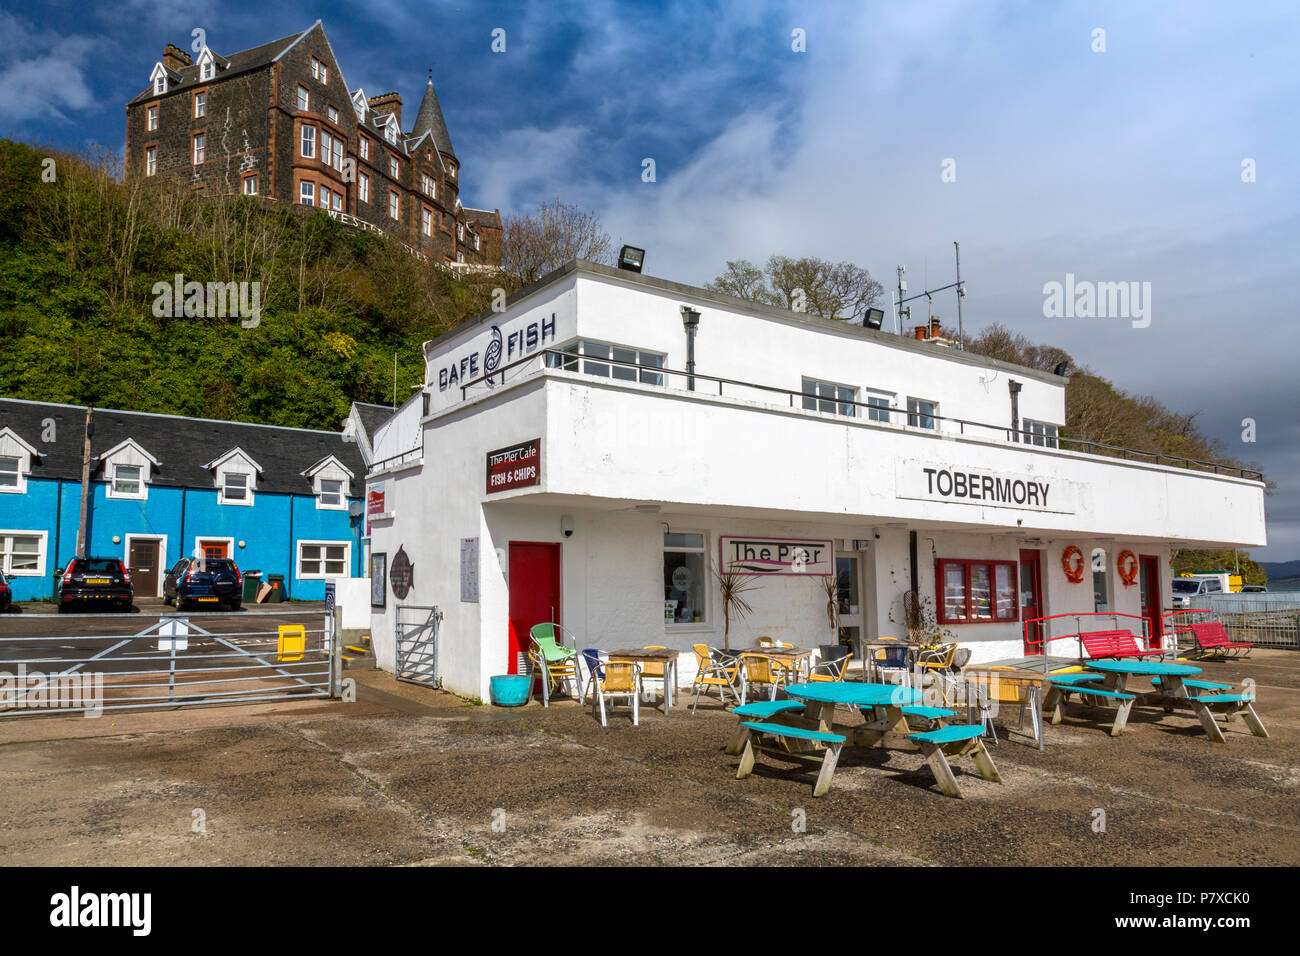 Die ehemalige Pier Head Offices in Tobermory, jetzt ein Fisch und chip Cafe, Isle of Mull, Argyll und Bute, Schottland, Großbritannien Stockfoto